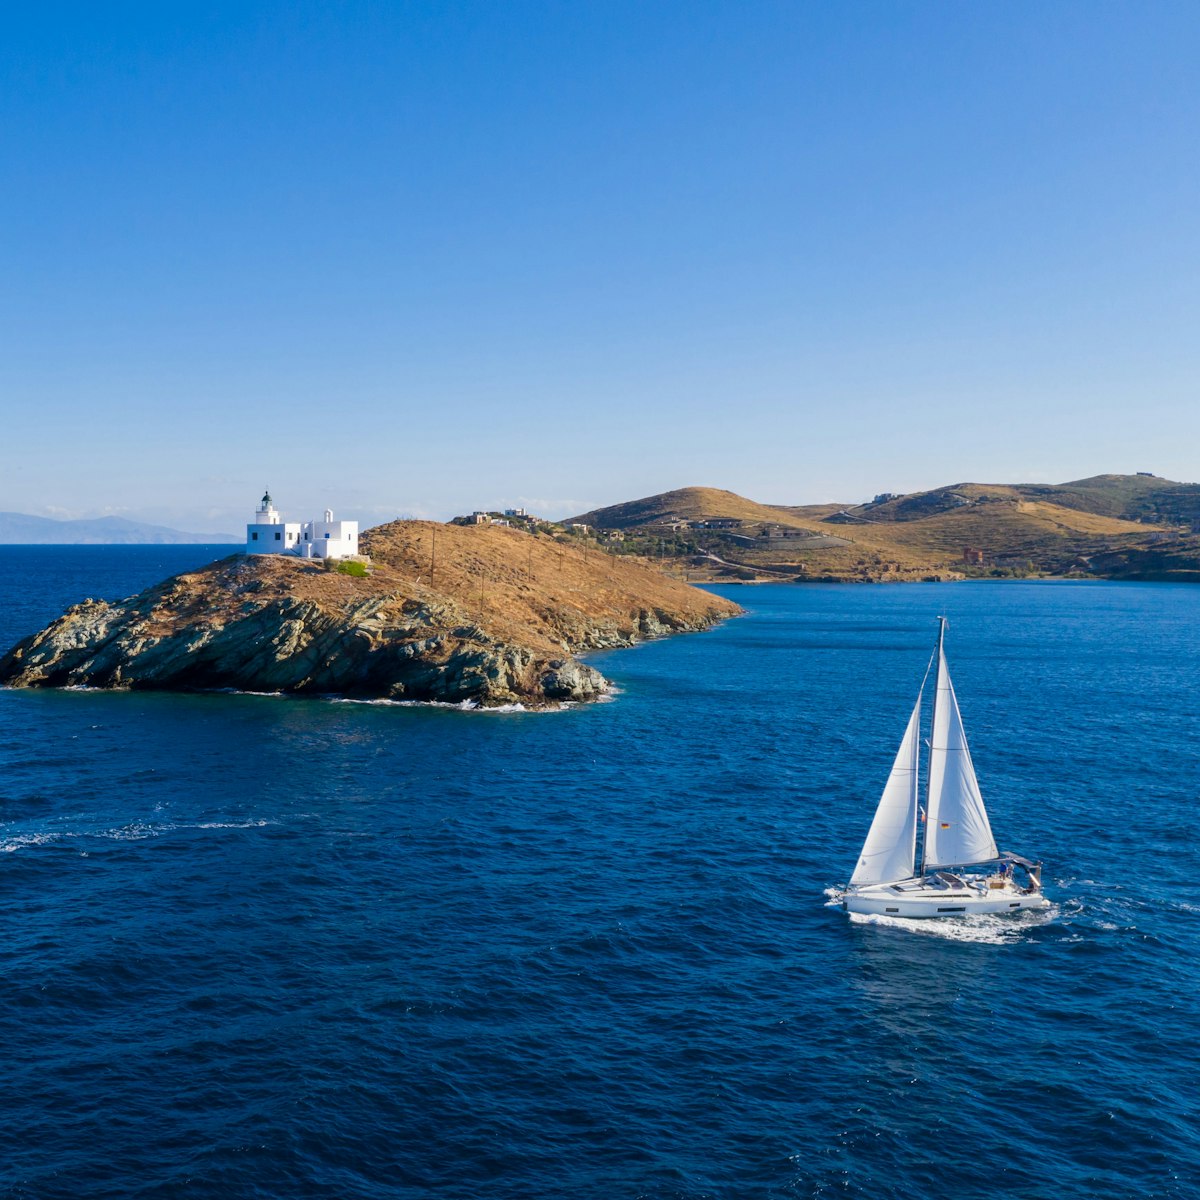 Begeben Sie sich auf ein Abenteuer und entdecken Sie die unvergleichliche Schönheit einiger der faszinierendsten Inseln in der Ägäis und im Ionischen Meer.